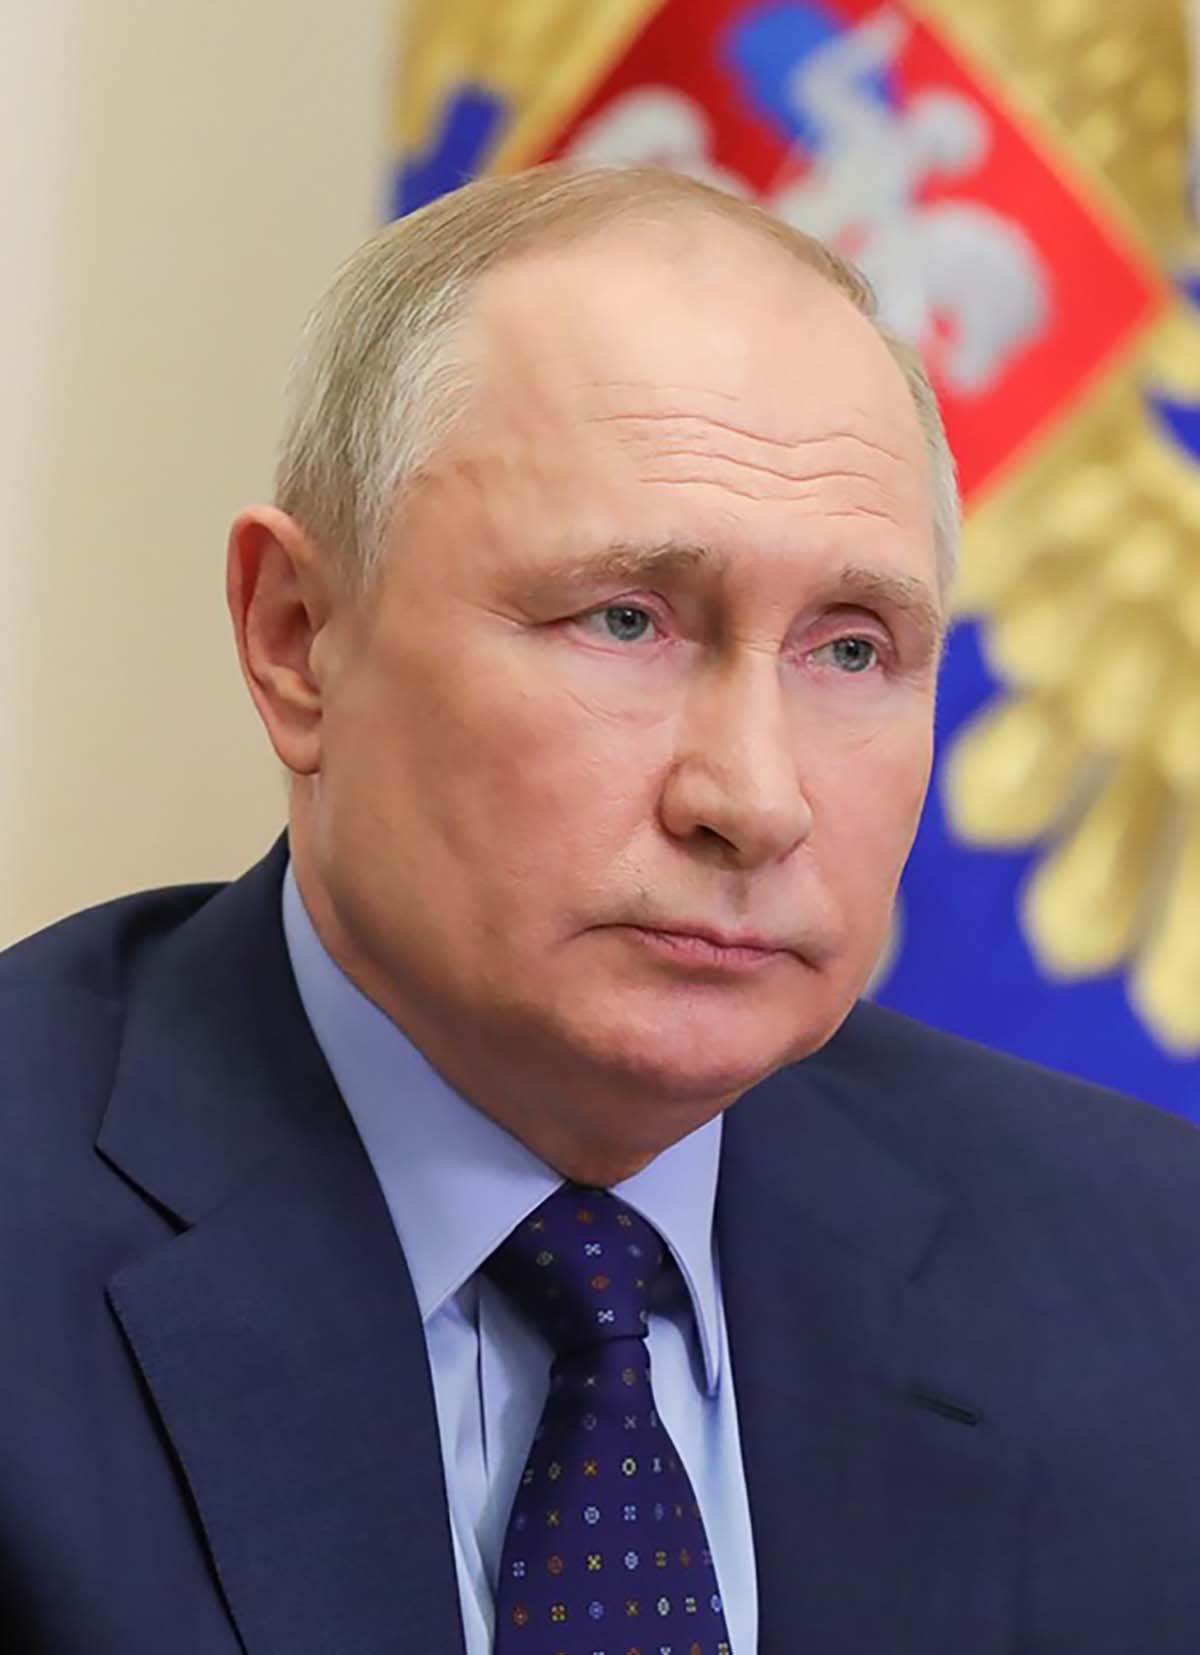  ukrajinski obavještajci tvrde da je Vladimir Putin teško bolestan 